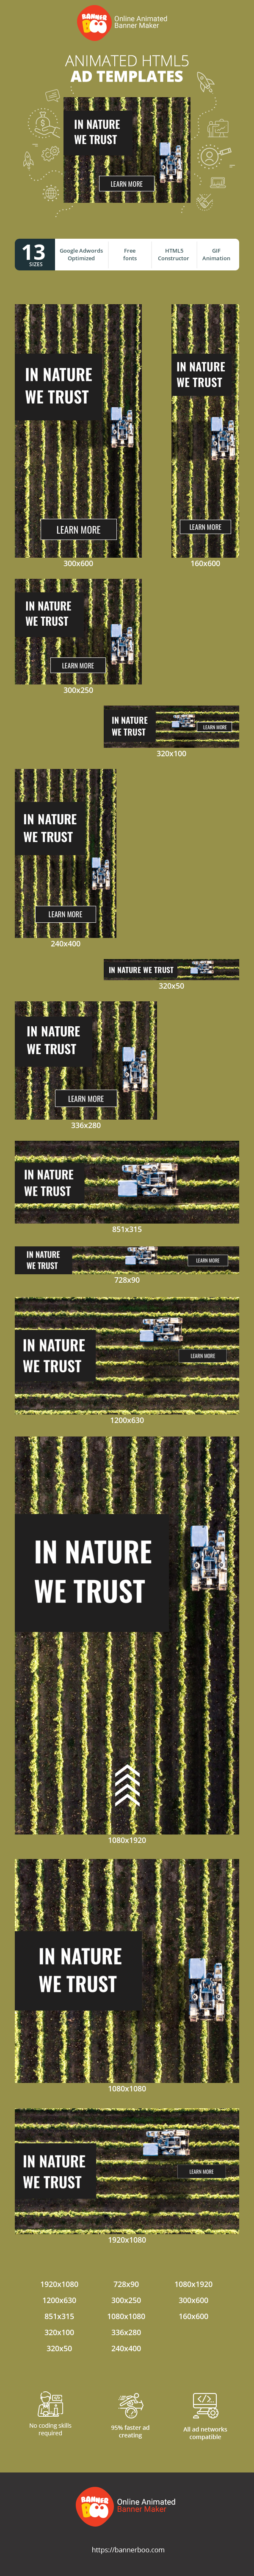 Шаблон рекламного банера — In Nature We Trust — Sale & Repair Of Farm Equipment